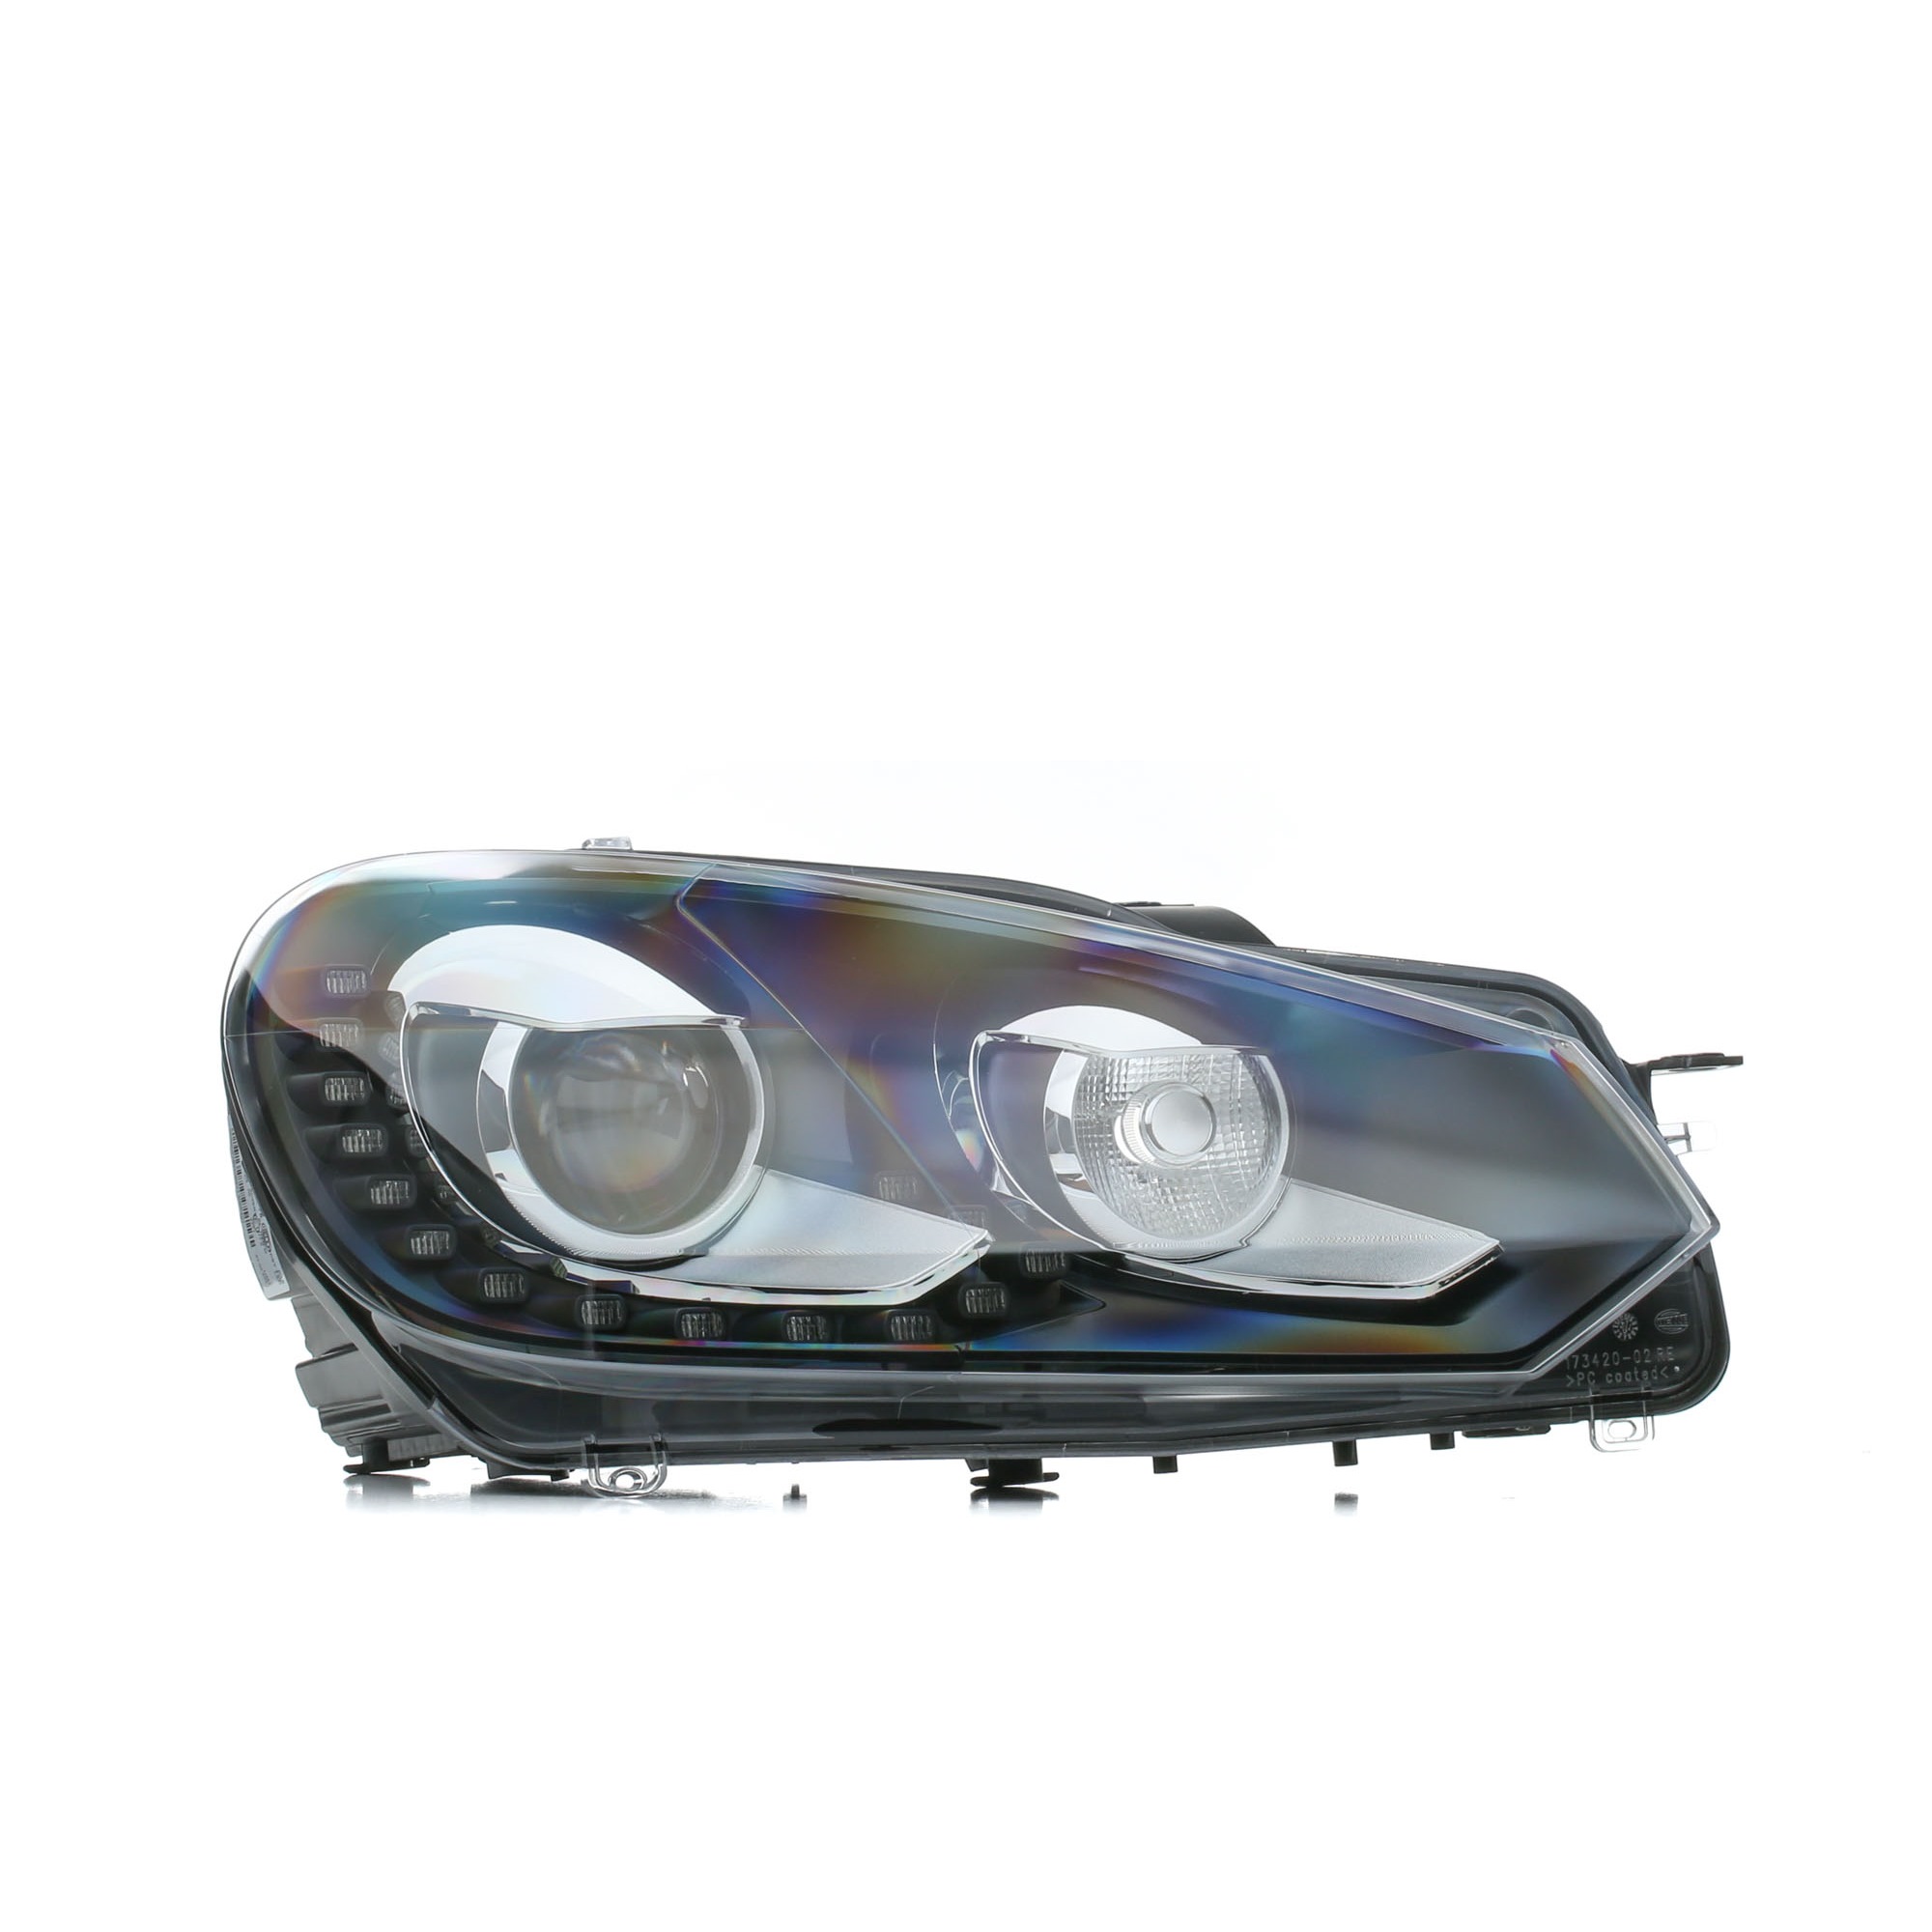 Scheinwerfer für Golf 6 LED und Xenon ▷ Ersatzteile im AUTODOC